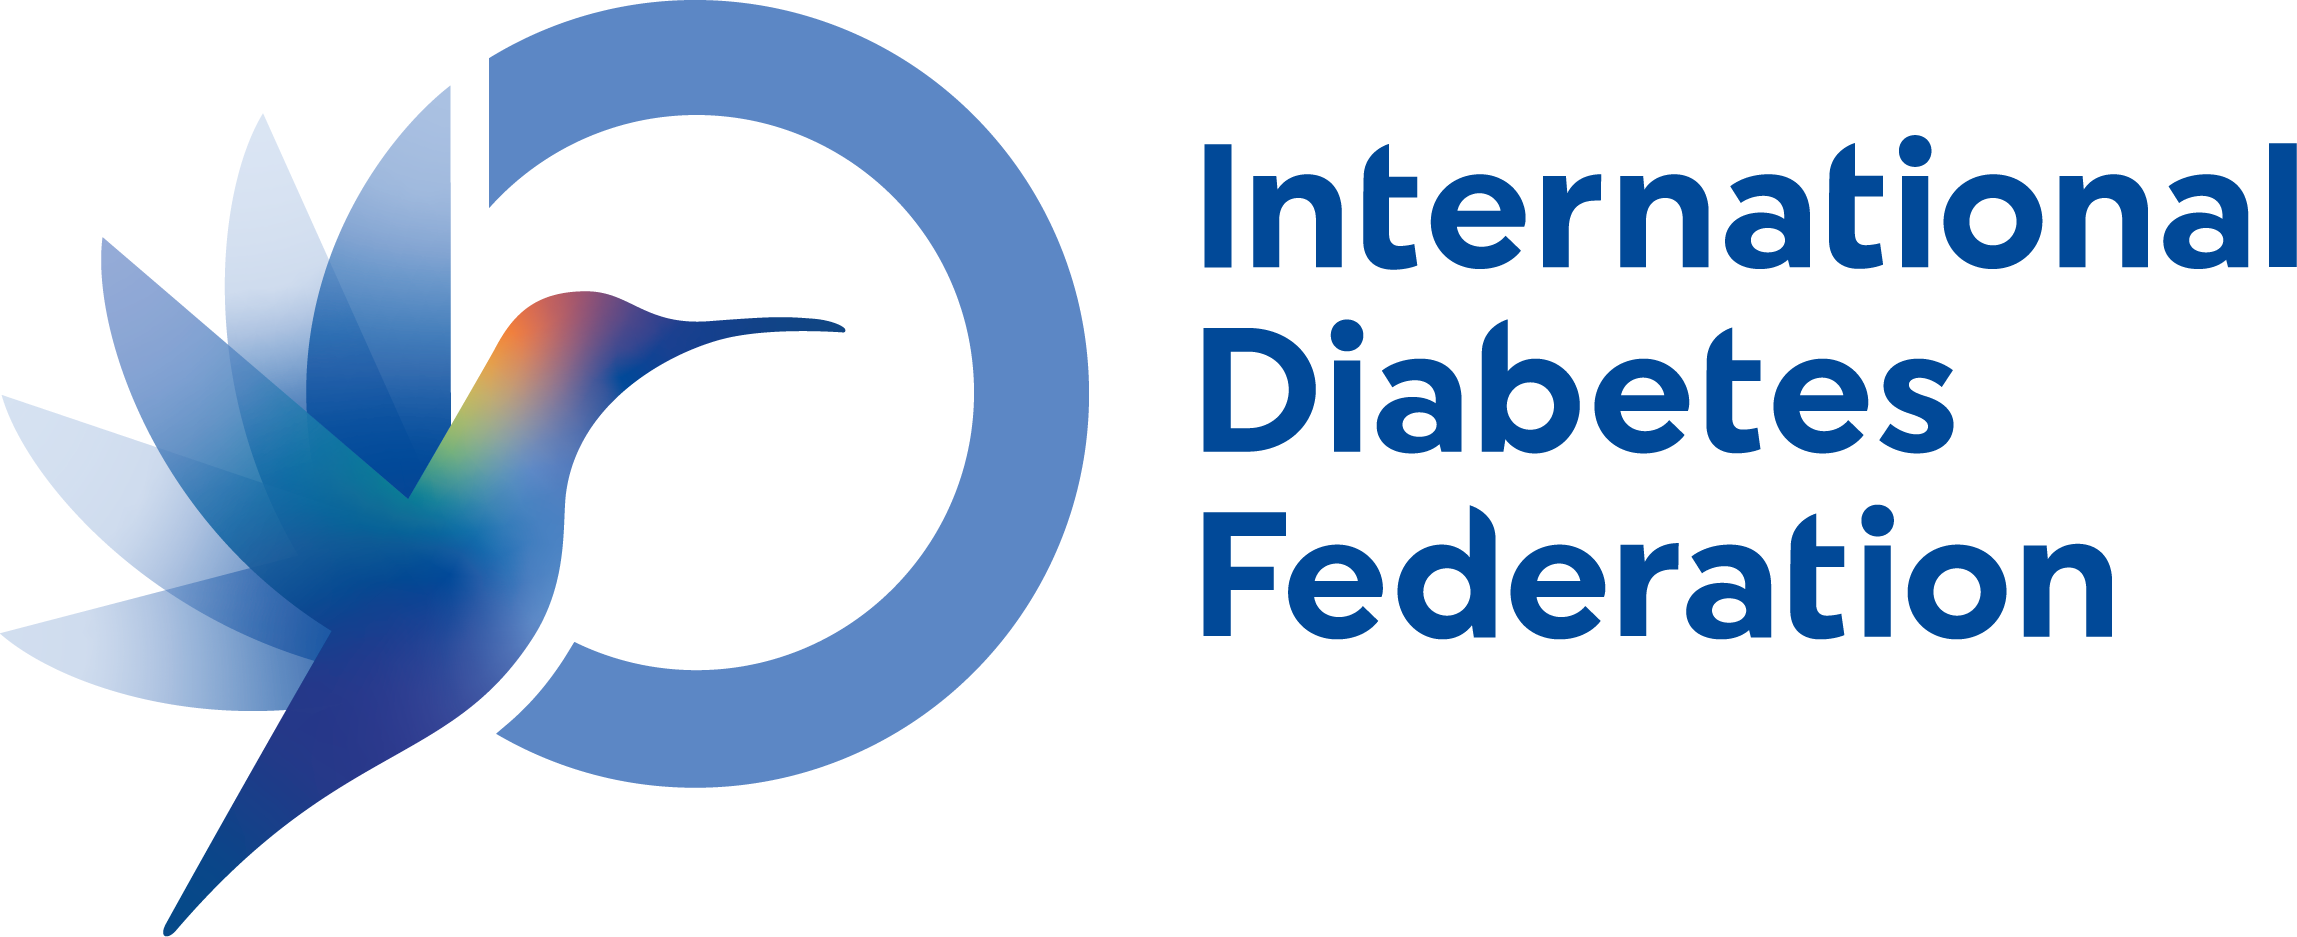 International Diabetes Federation (IDF)